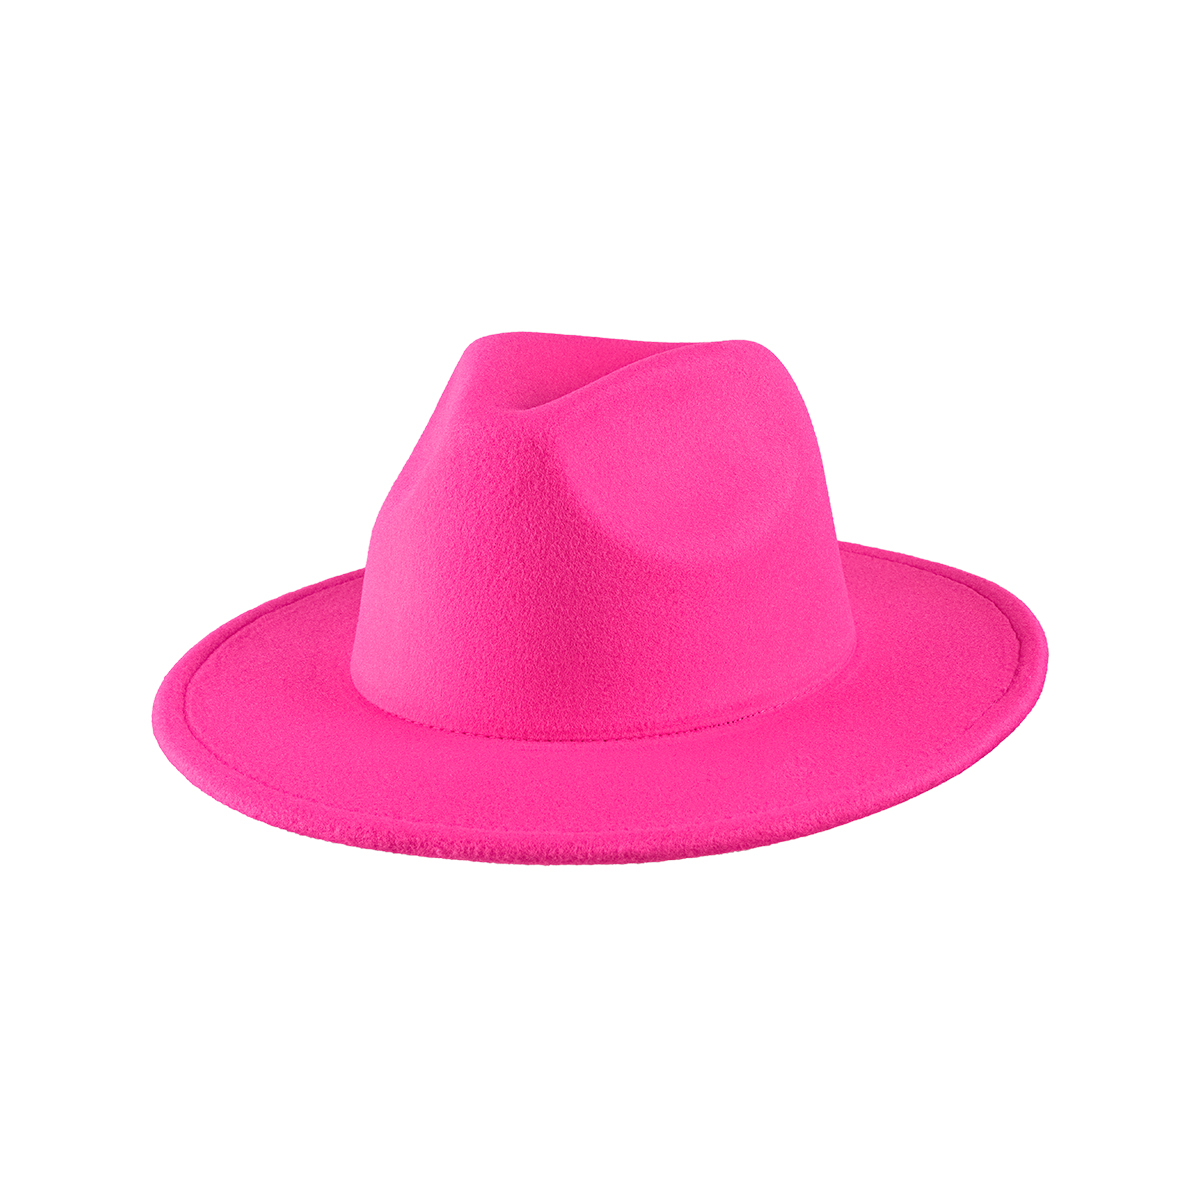 Sombrero fedora rosa pastel